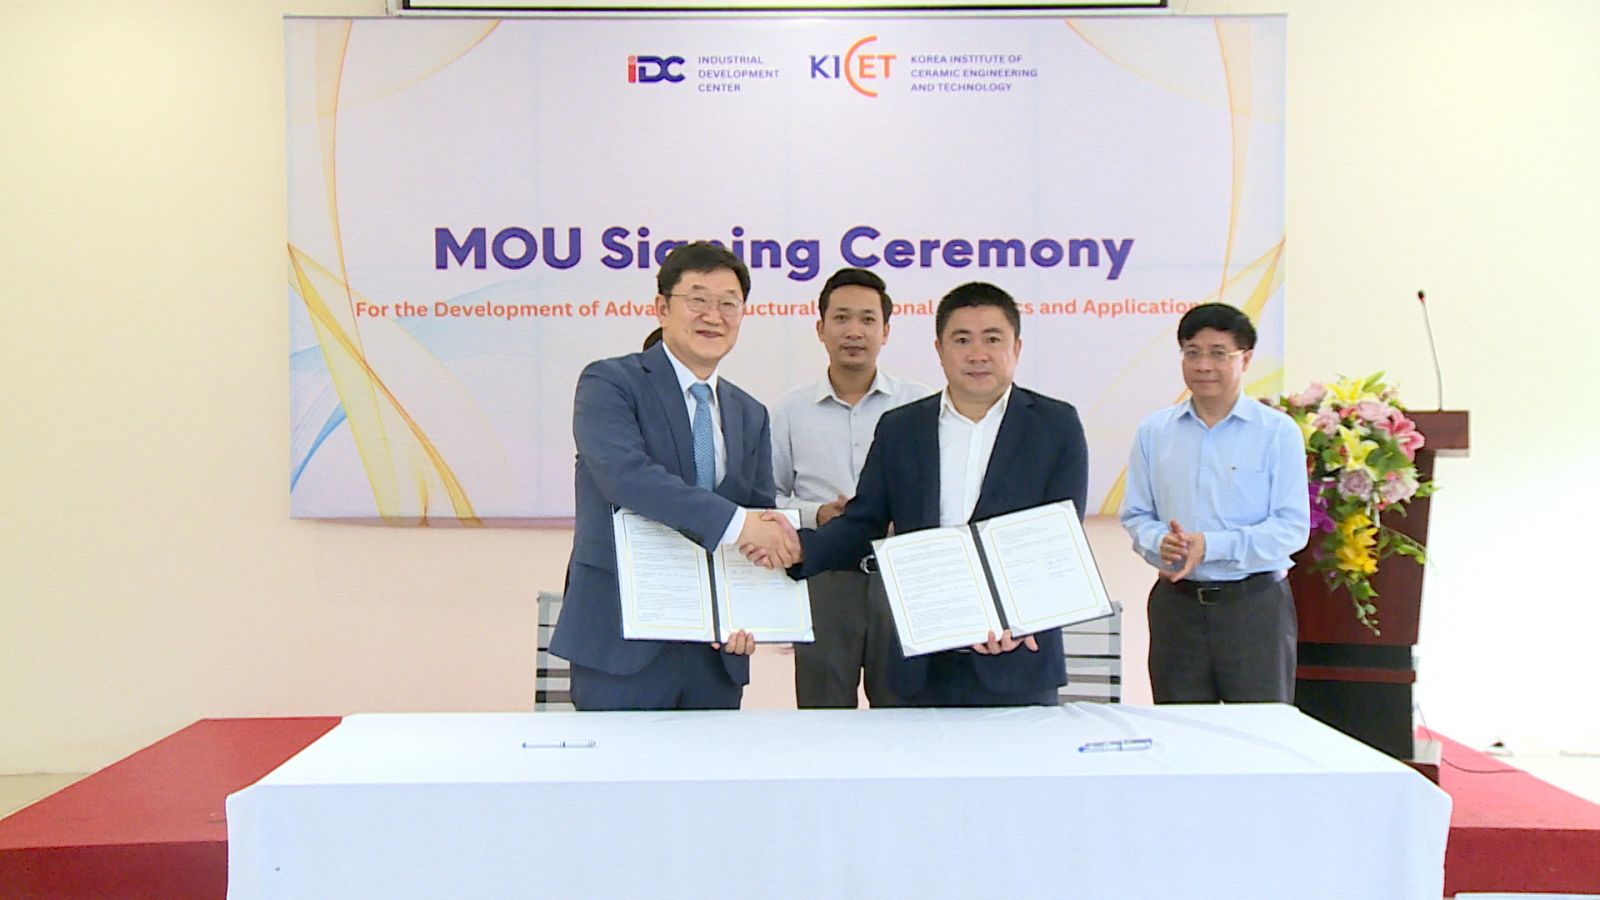 Lễ ký kết Biên bản ghi nhớ (MOU) giữa Trung tâm Hỗ trợ phát triển công nghiệp (IDC) và Viện Kỹ thuật và Công nghệ Hàn Quốc (KICET)